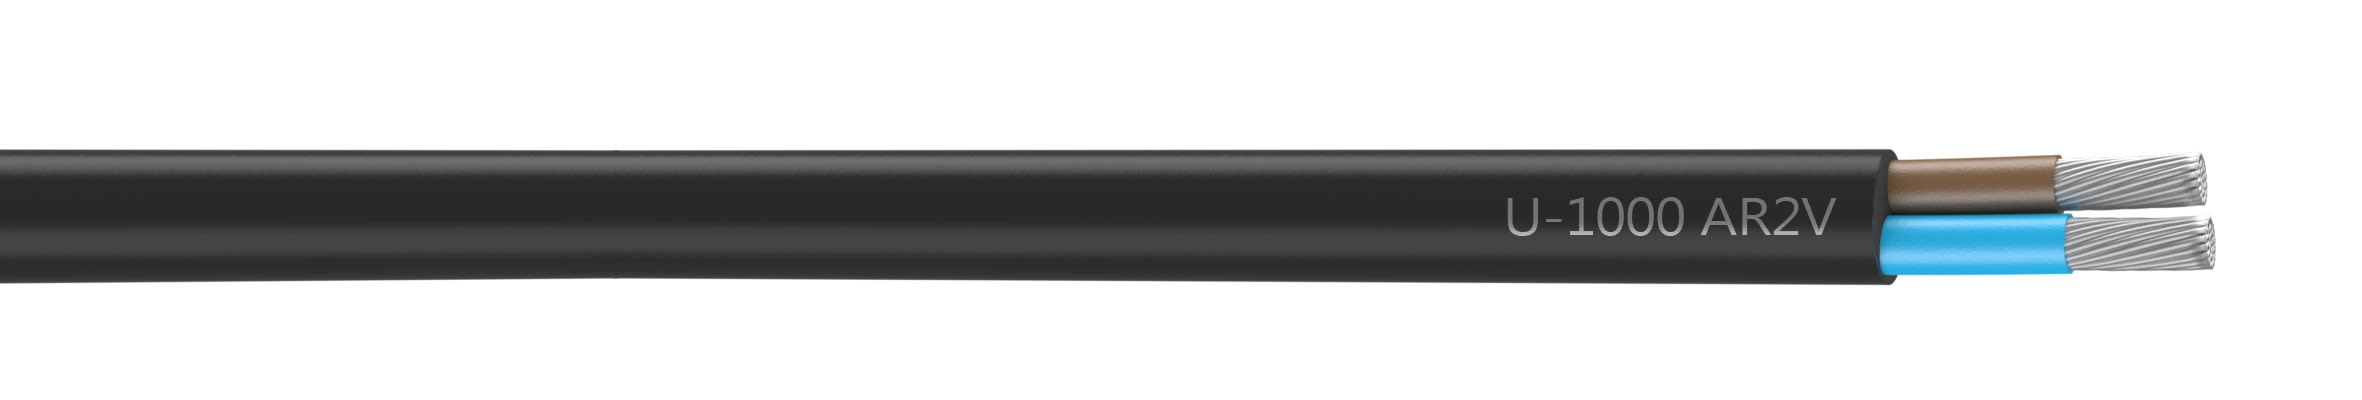 Nexans - Câble rigide U-1000 AR2V aluminium 2x35 longueur à la coupe